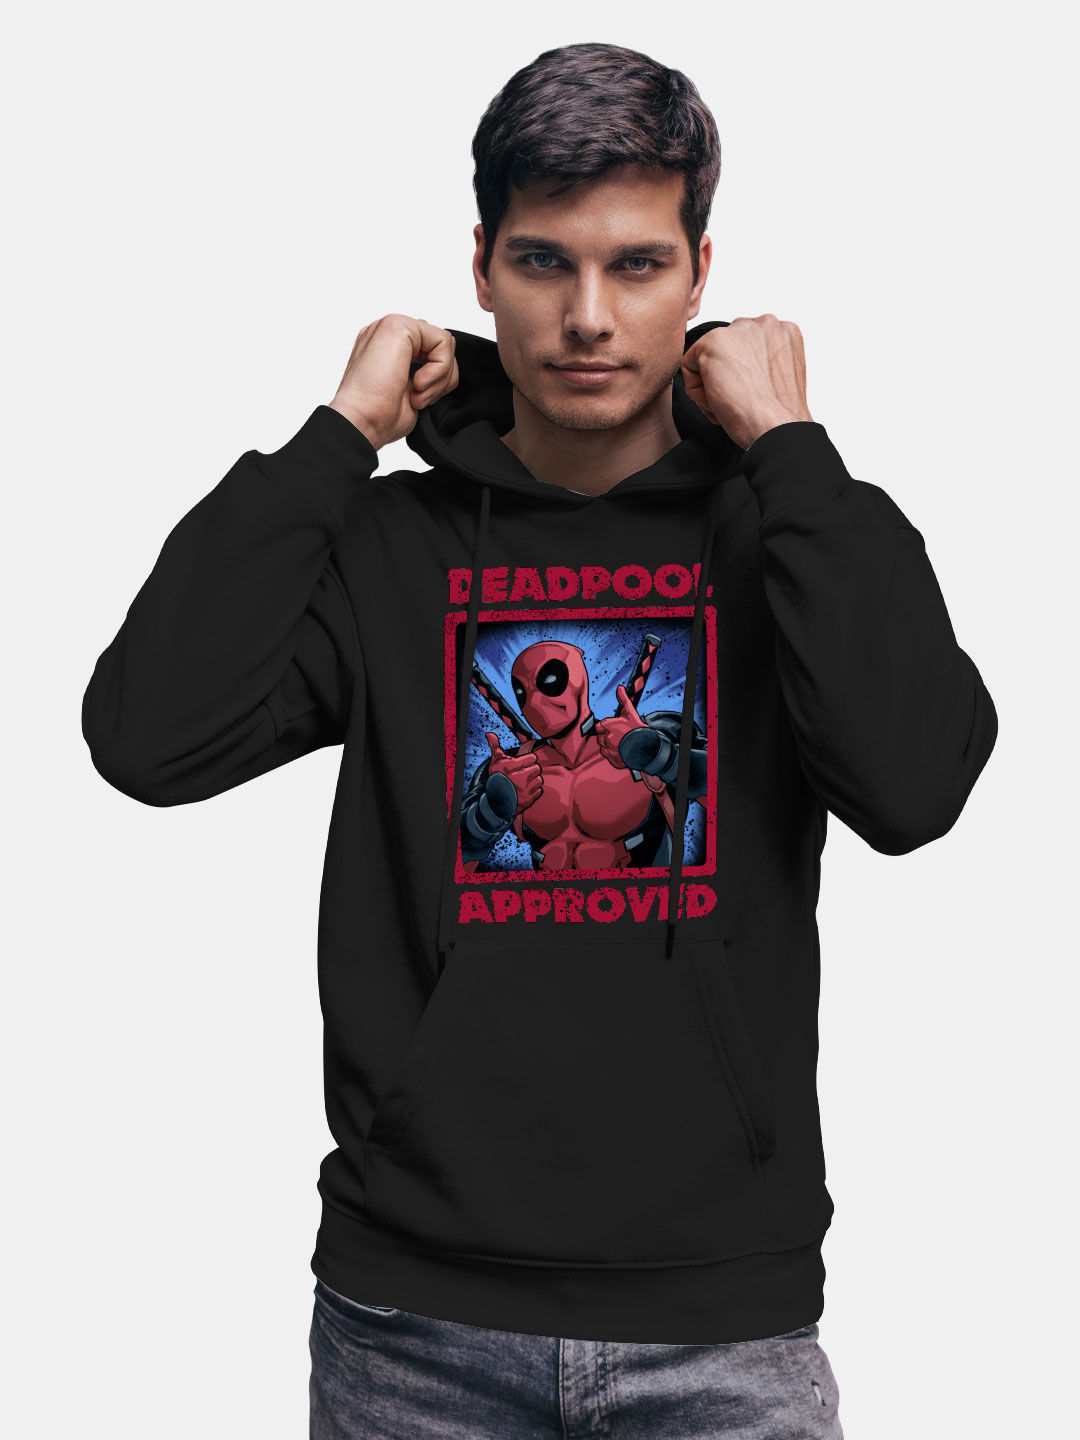 Buy Deadpool Approved - Hoodie Hoodies Online